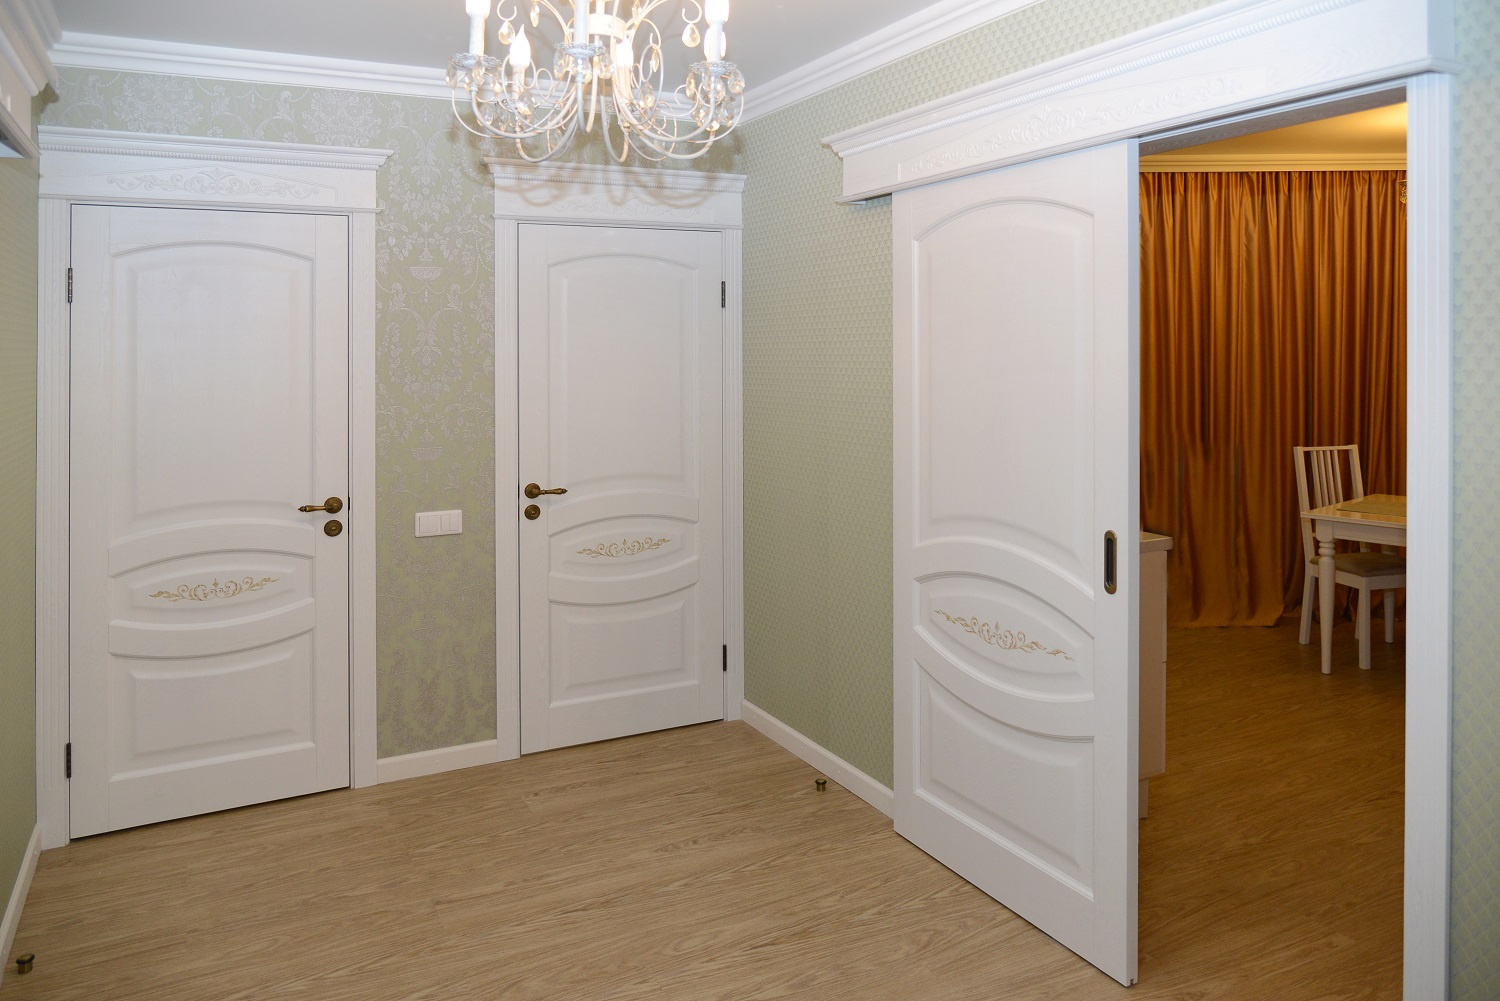 Фото дверей в светлой квартире. Двери в классическом стиле. Светлые двери в интерьере. Белые межкомнатные двери в интерьере. Двери межкомнатные светлые.